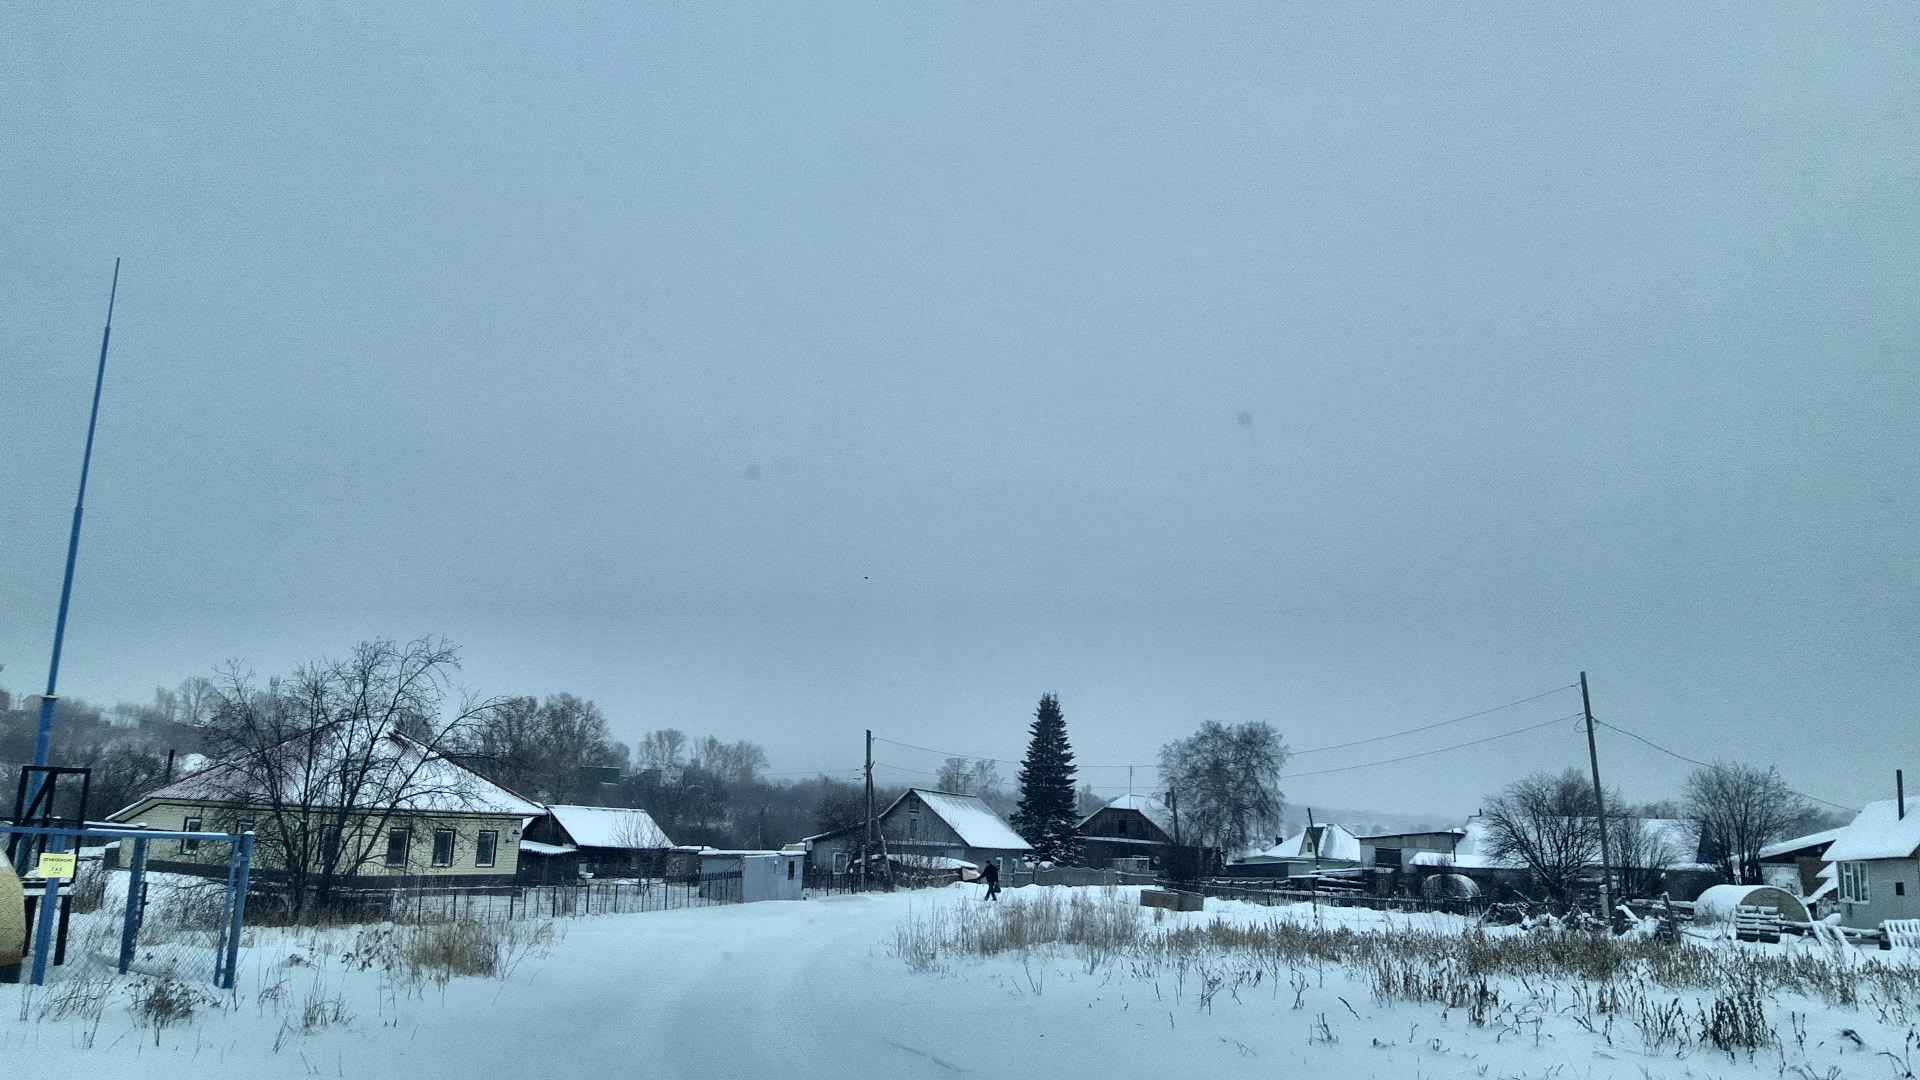 Кривой переулок поселка Боровой Кемерово